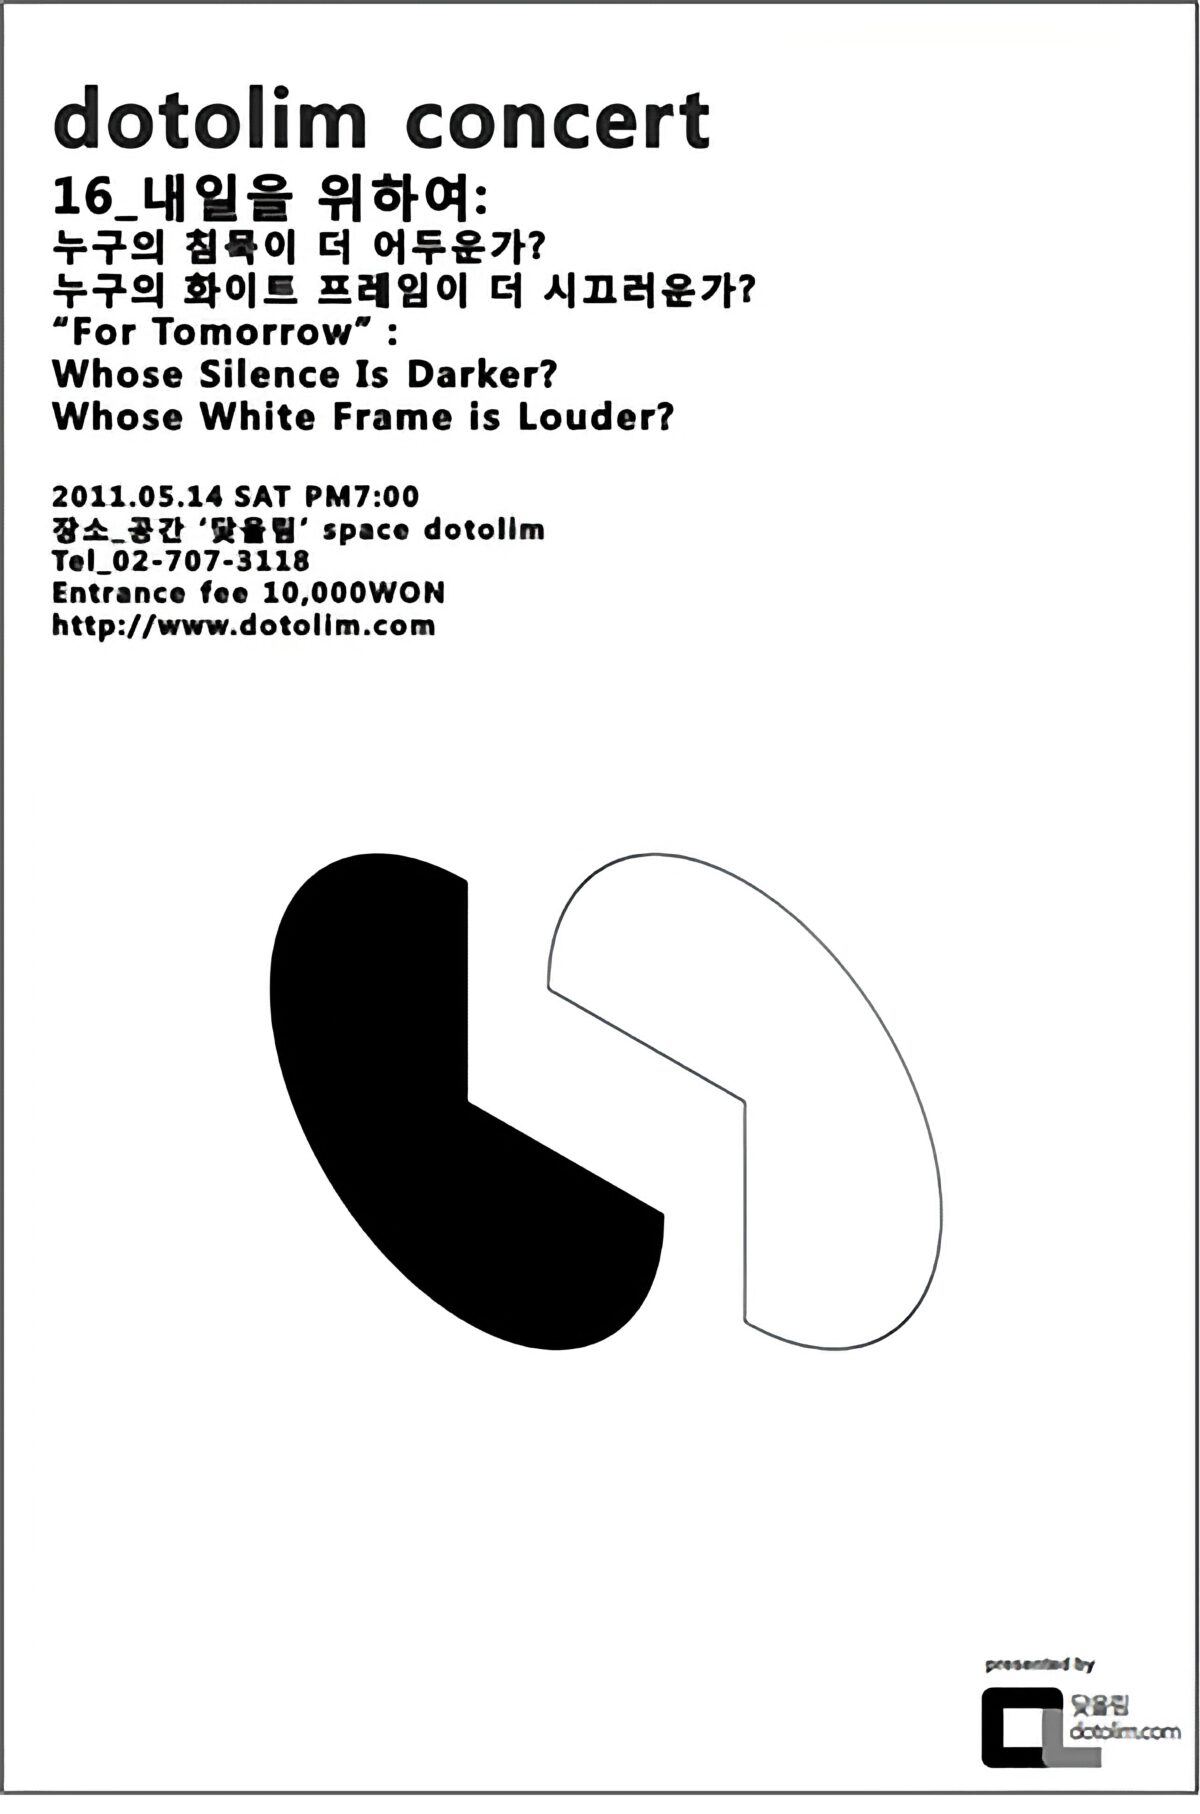 닻올림 연주회_16 내일을 위하여 : 누구의 침묵이 더 어두운가? 누구의 화이트 프레임이 더 시끄러운가?